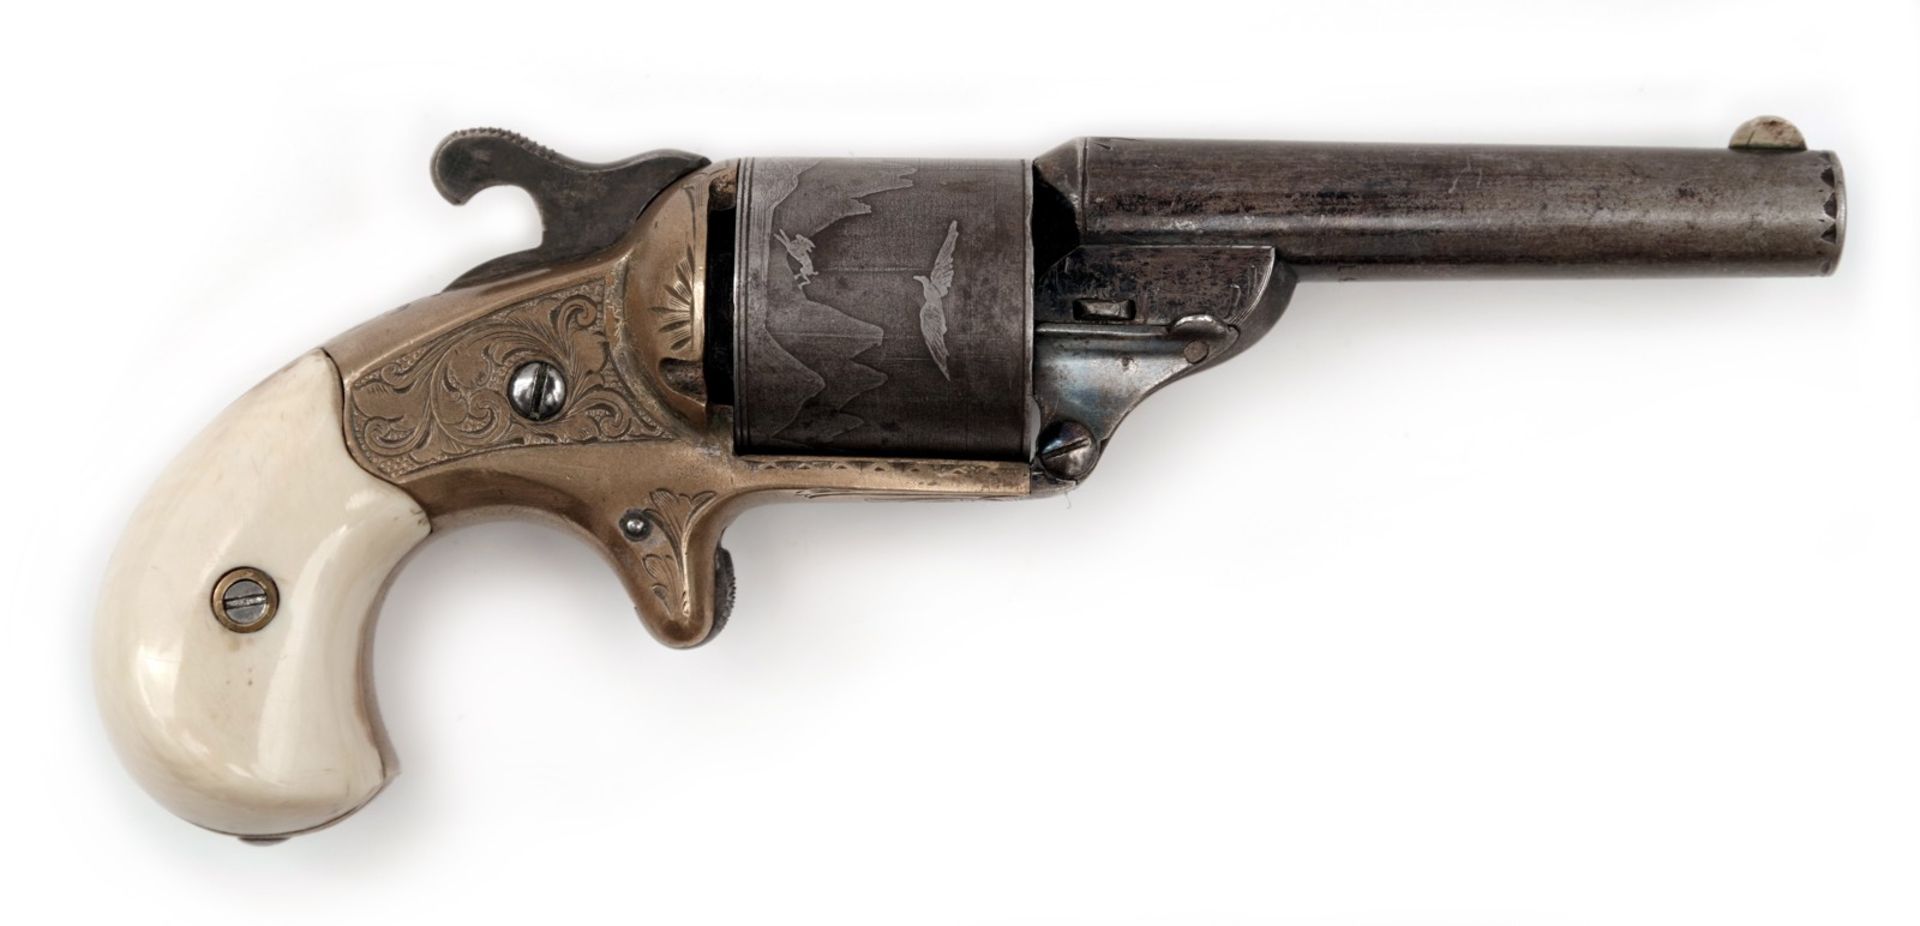 Moore´s Front Loading Teat-Fire Revolver im Kasten - Bild 2 aus 7